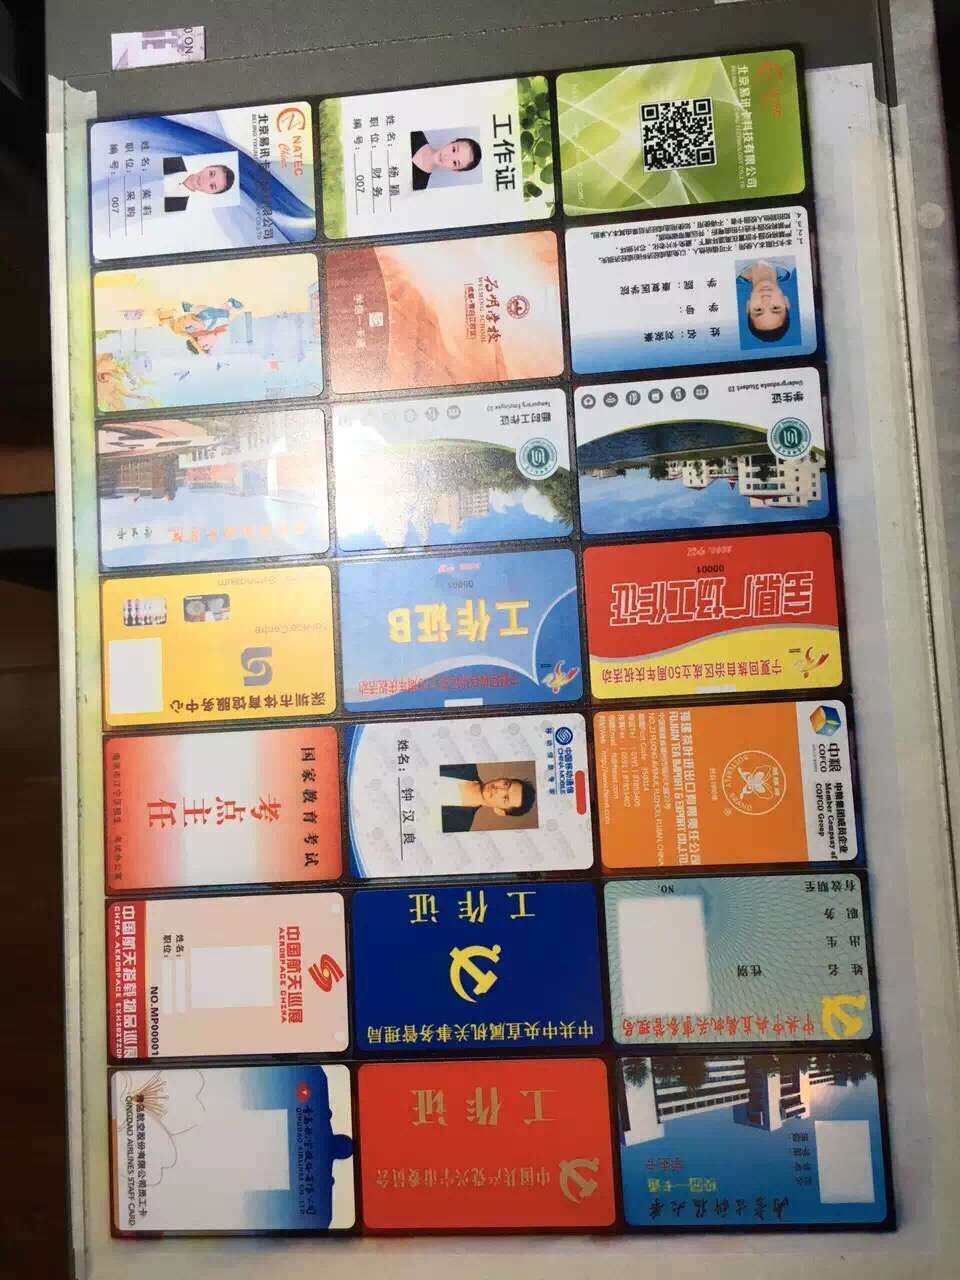 供应人像卡 pvc人像卡 UV涂层直印卡 北京智能卡图片